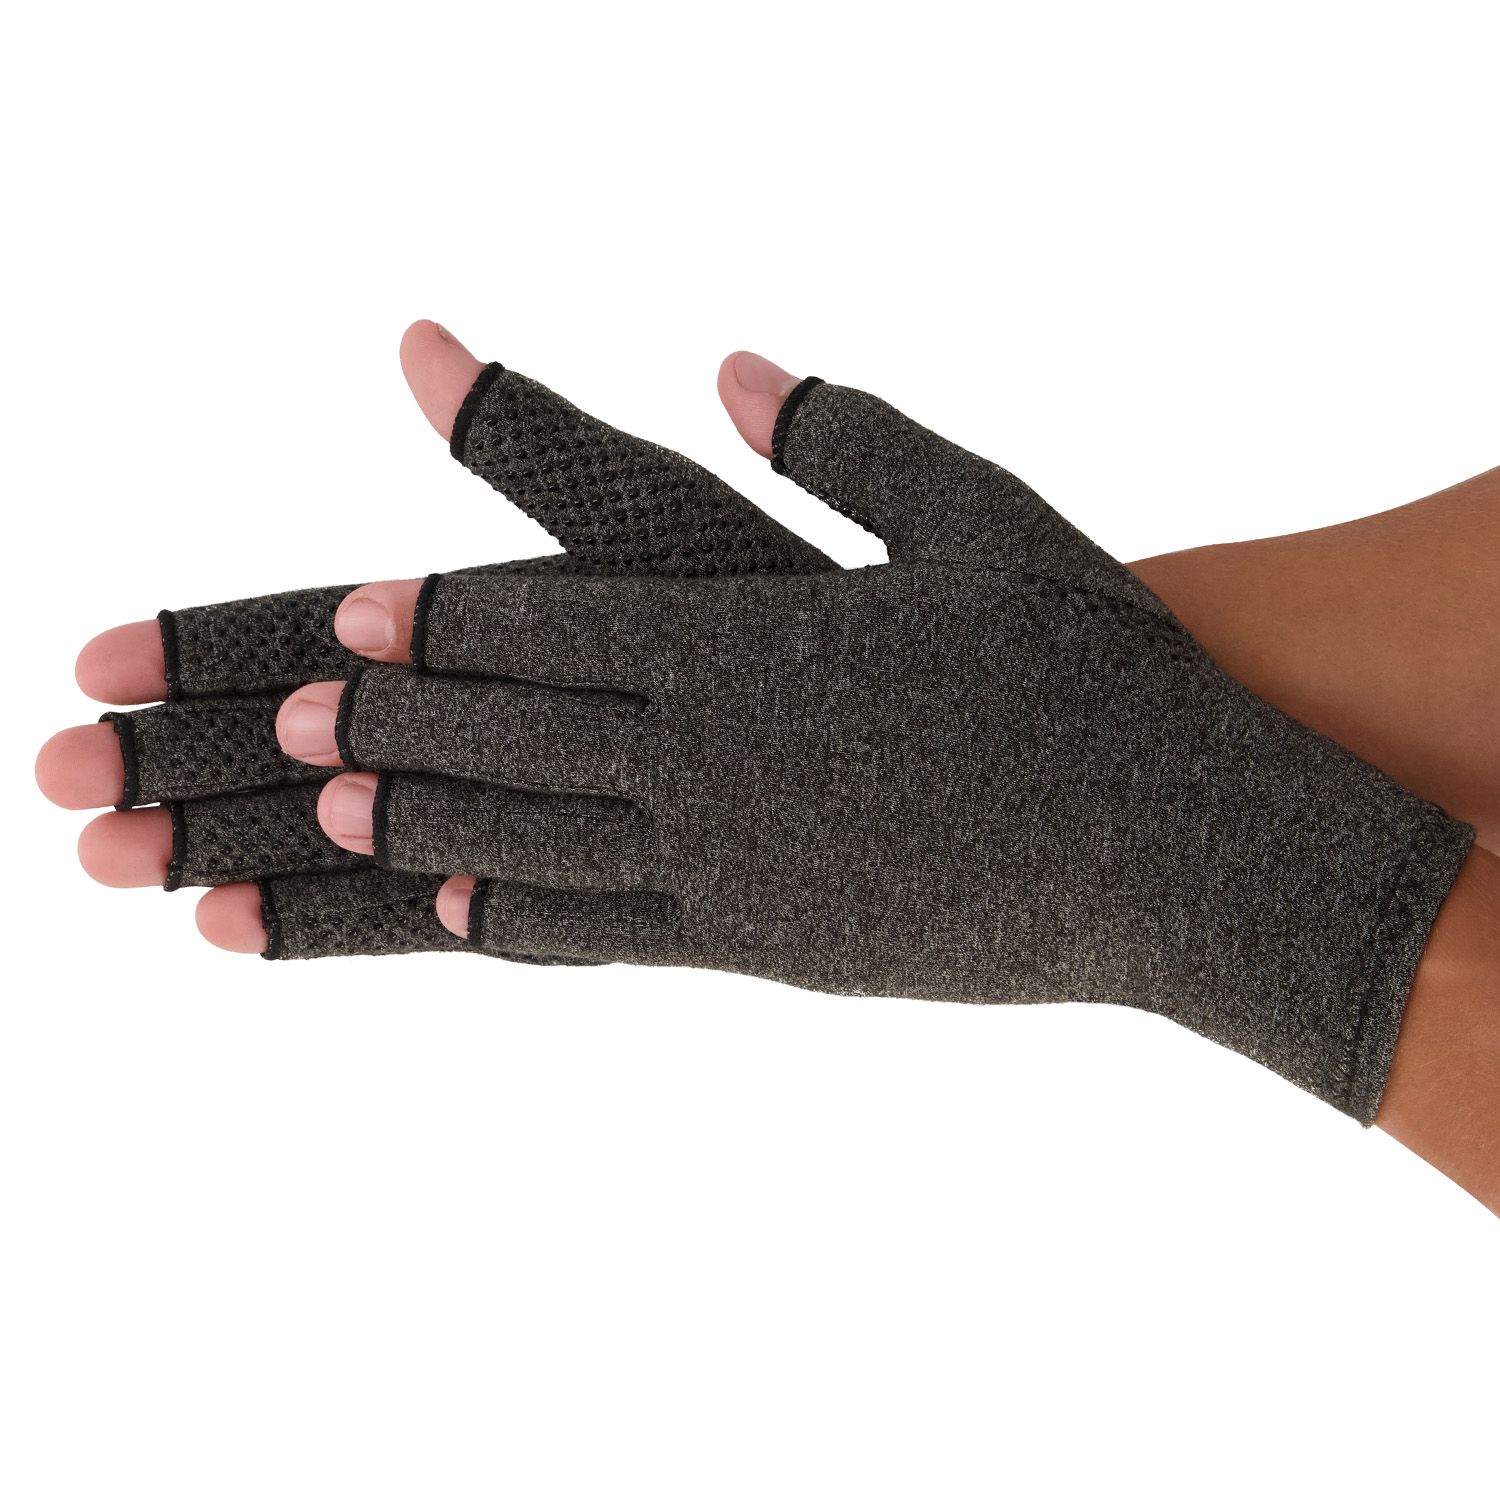 dunimed rheumatoid arthritis osteoarthritis gloves with anti-slip layer